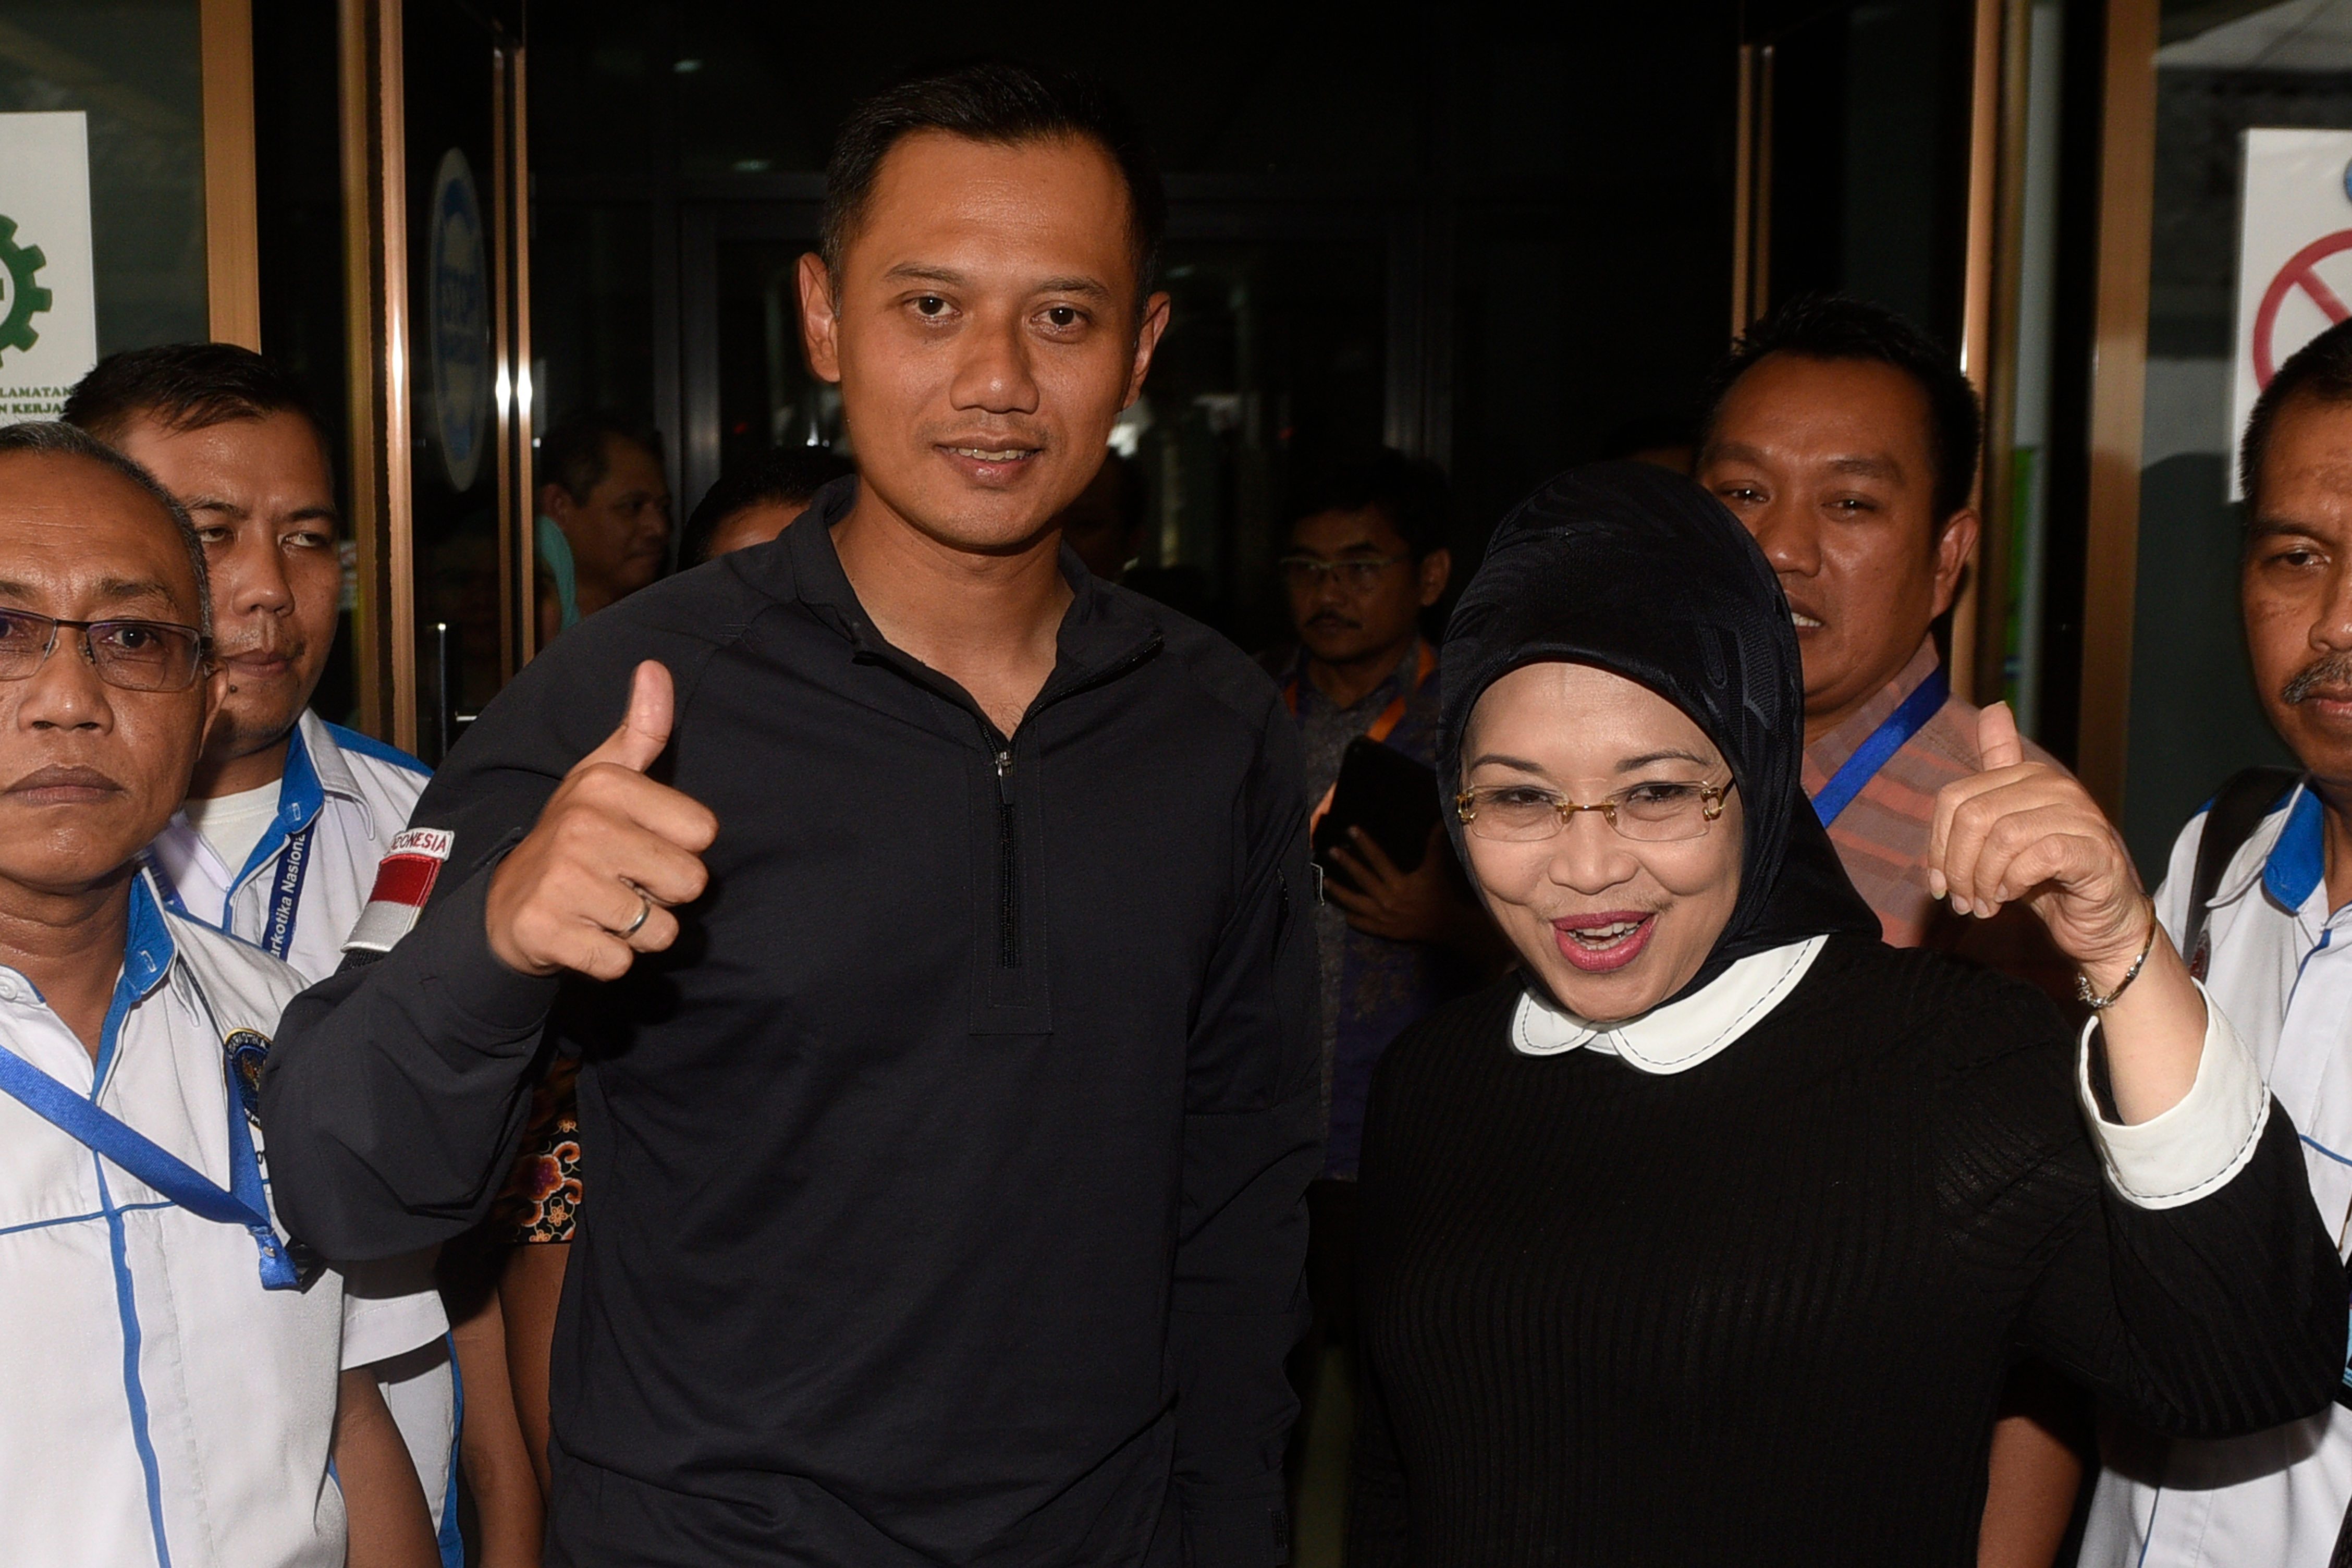 Pasangan cagub DKI Agus Yudhoyono bersama cawagub Sylviana Murni saat akan menjalani tes bebas narkoba di kantor Badan Narkotika Nasional, pada 25 September 2016. Foto oleh Puspa Perwitasari/Antara 